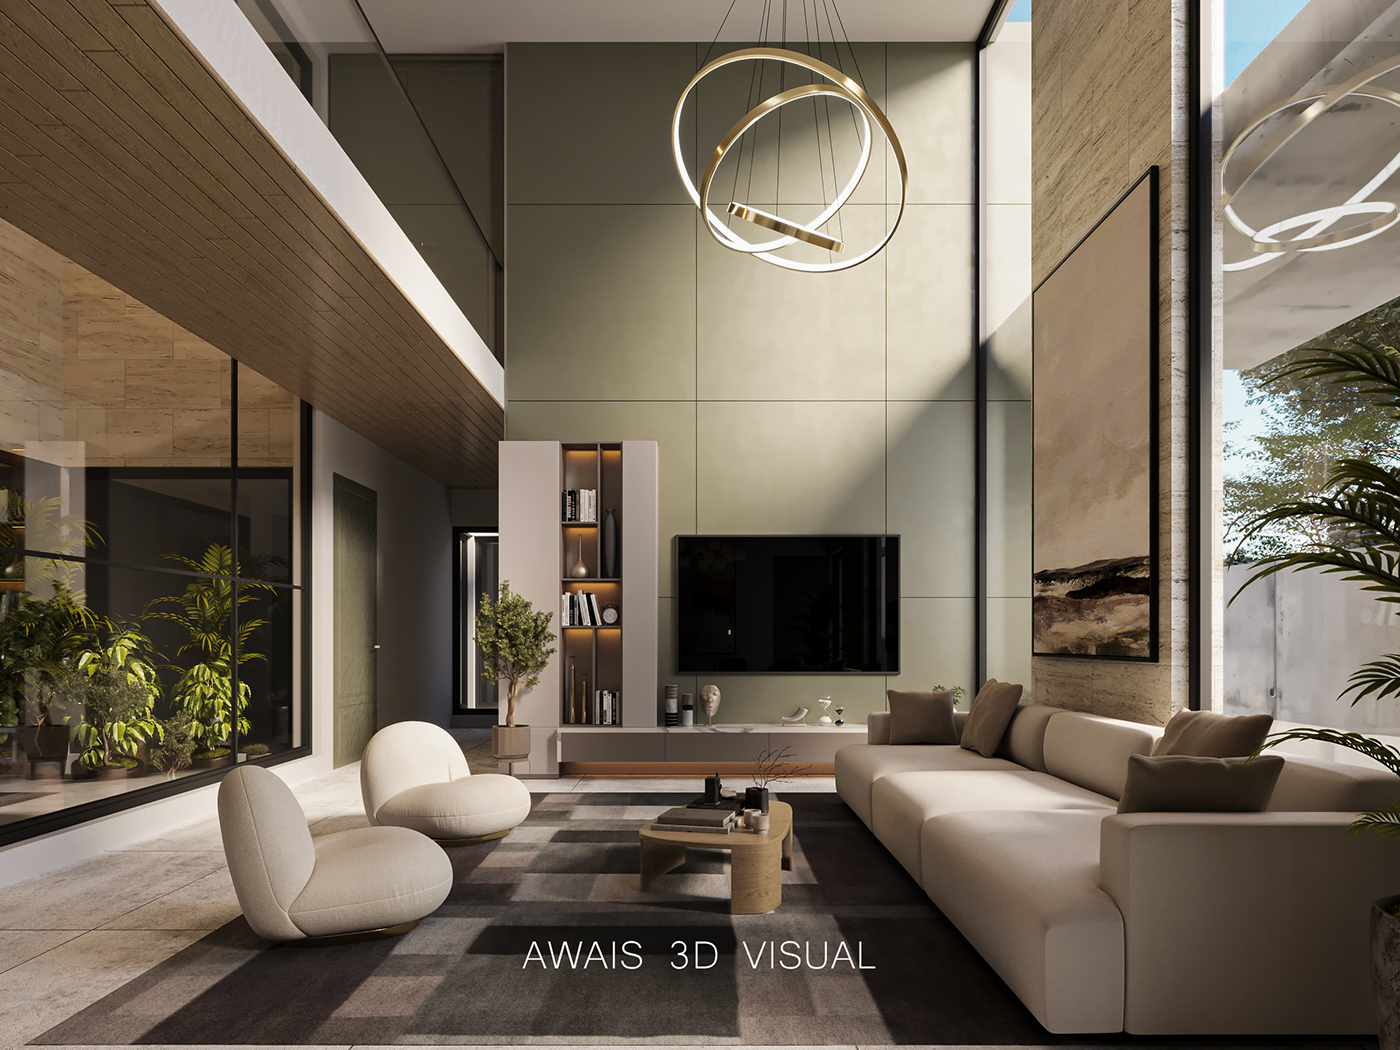 living Interior Render visualization modern architecture interior design  CGI corona 3ds max